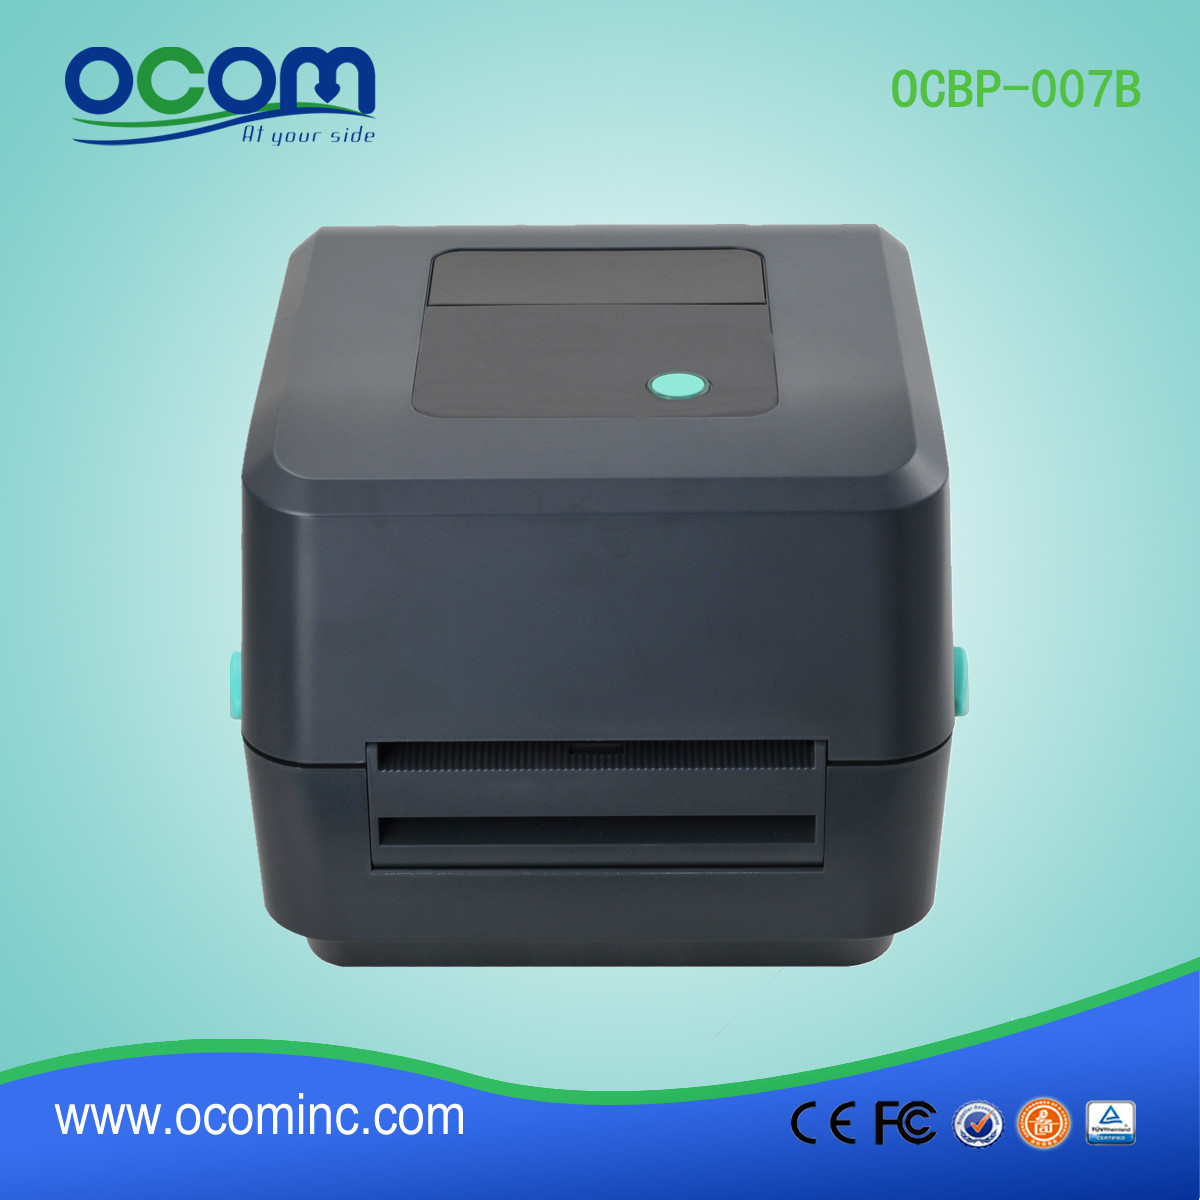 Neuer thermischer Barcode-Etikettendrucker Modell OCBP-007B